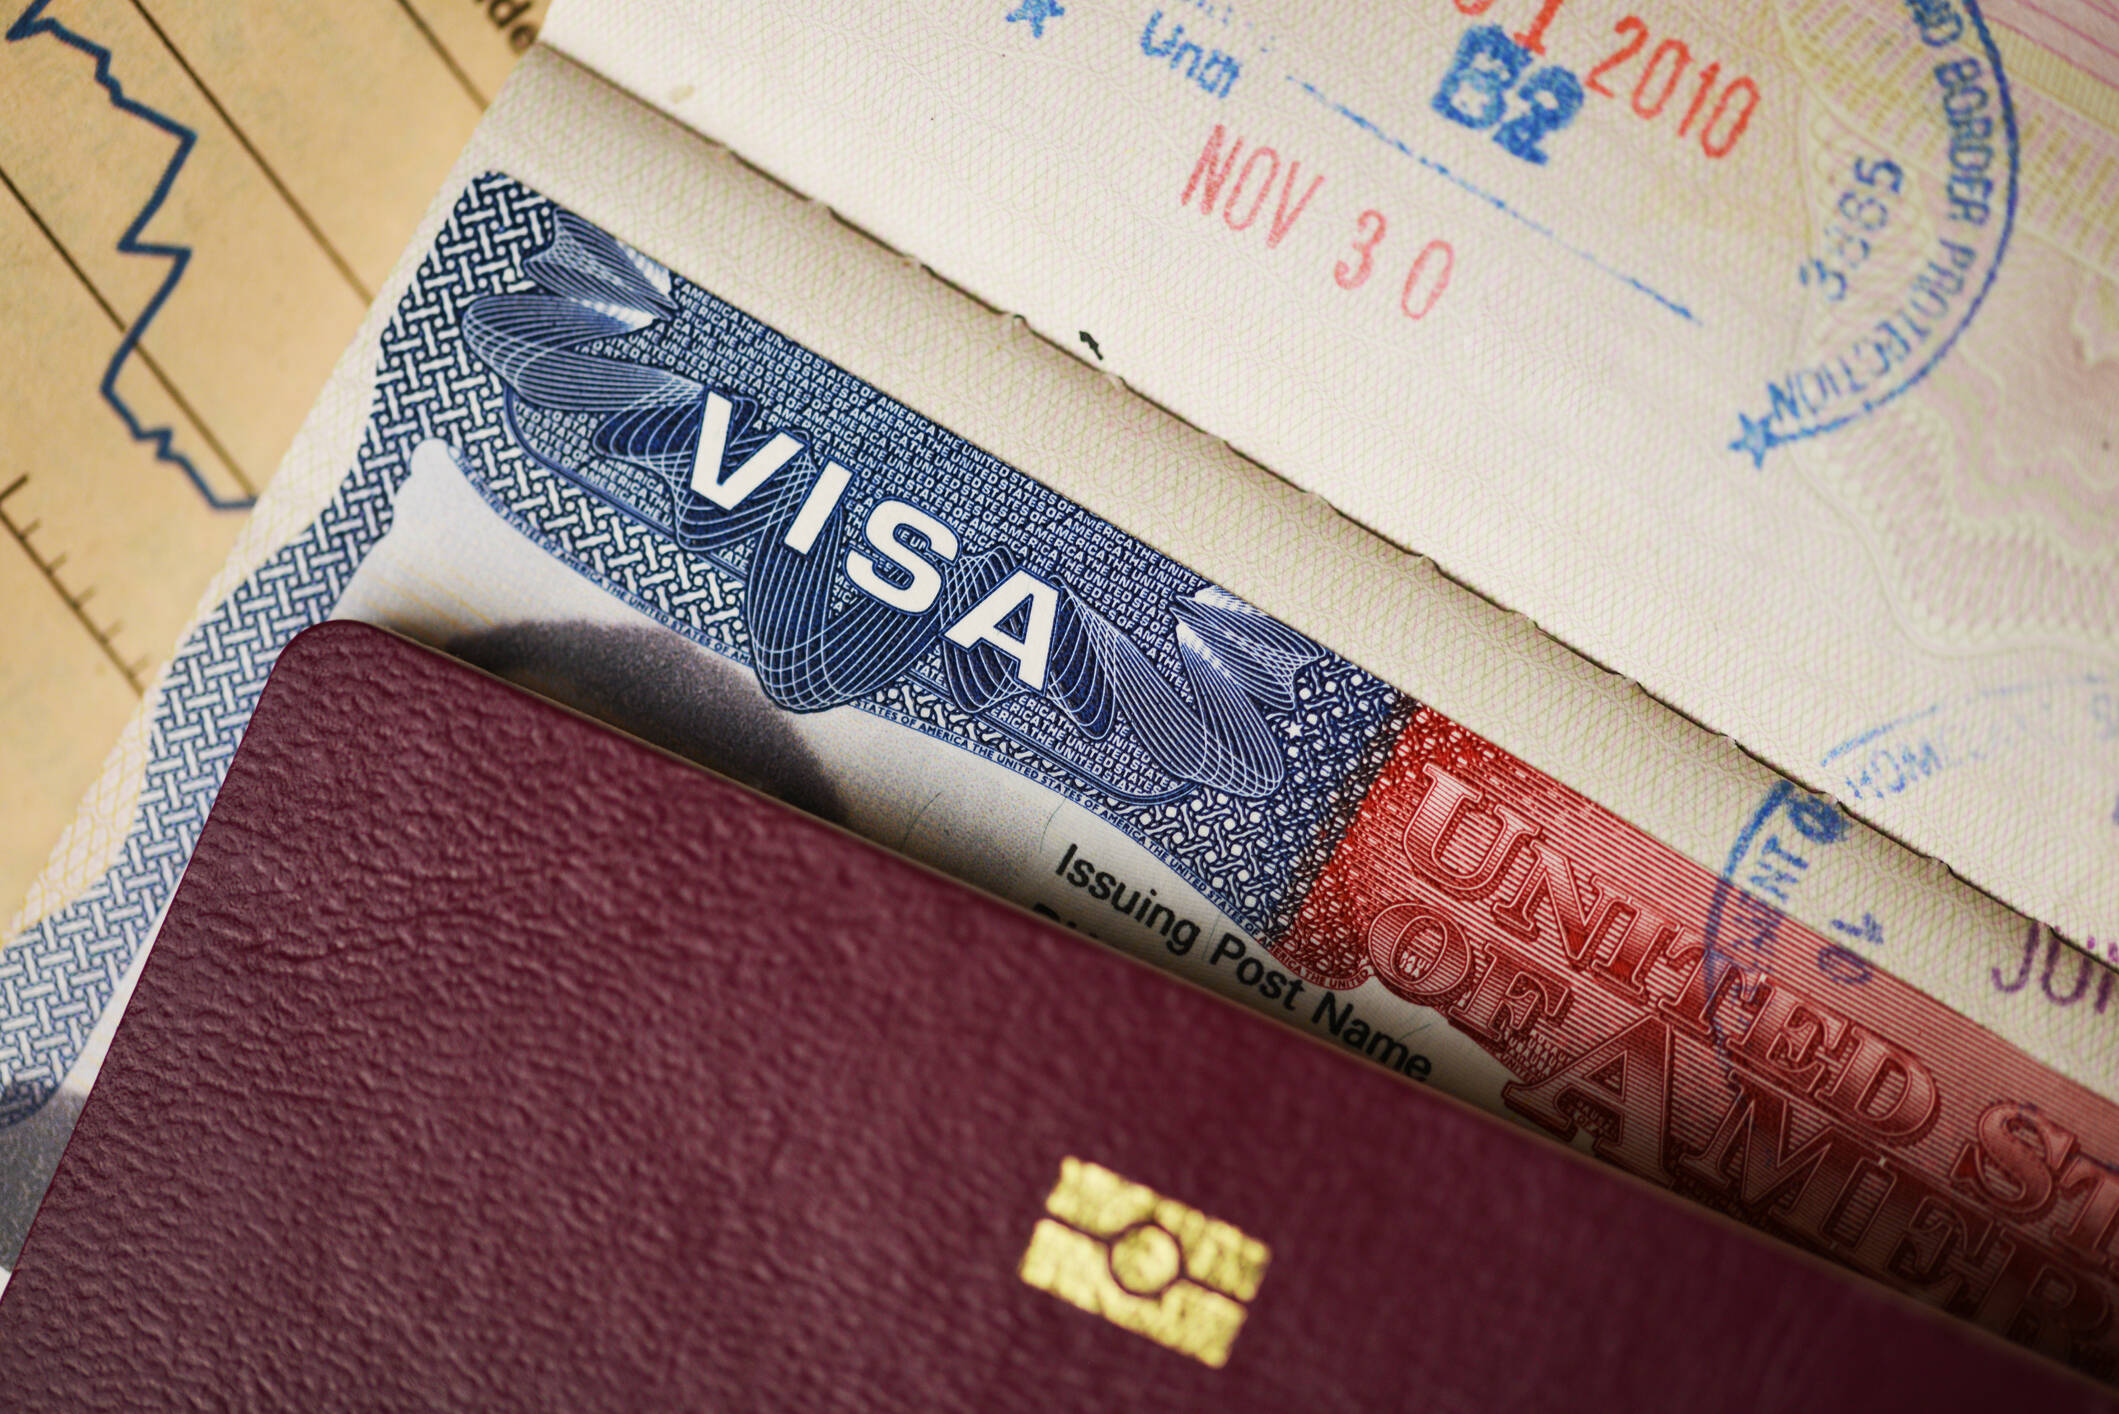 Visa americana: preguntas más comunes en la entrevista